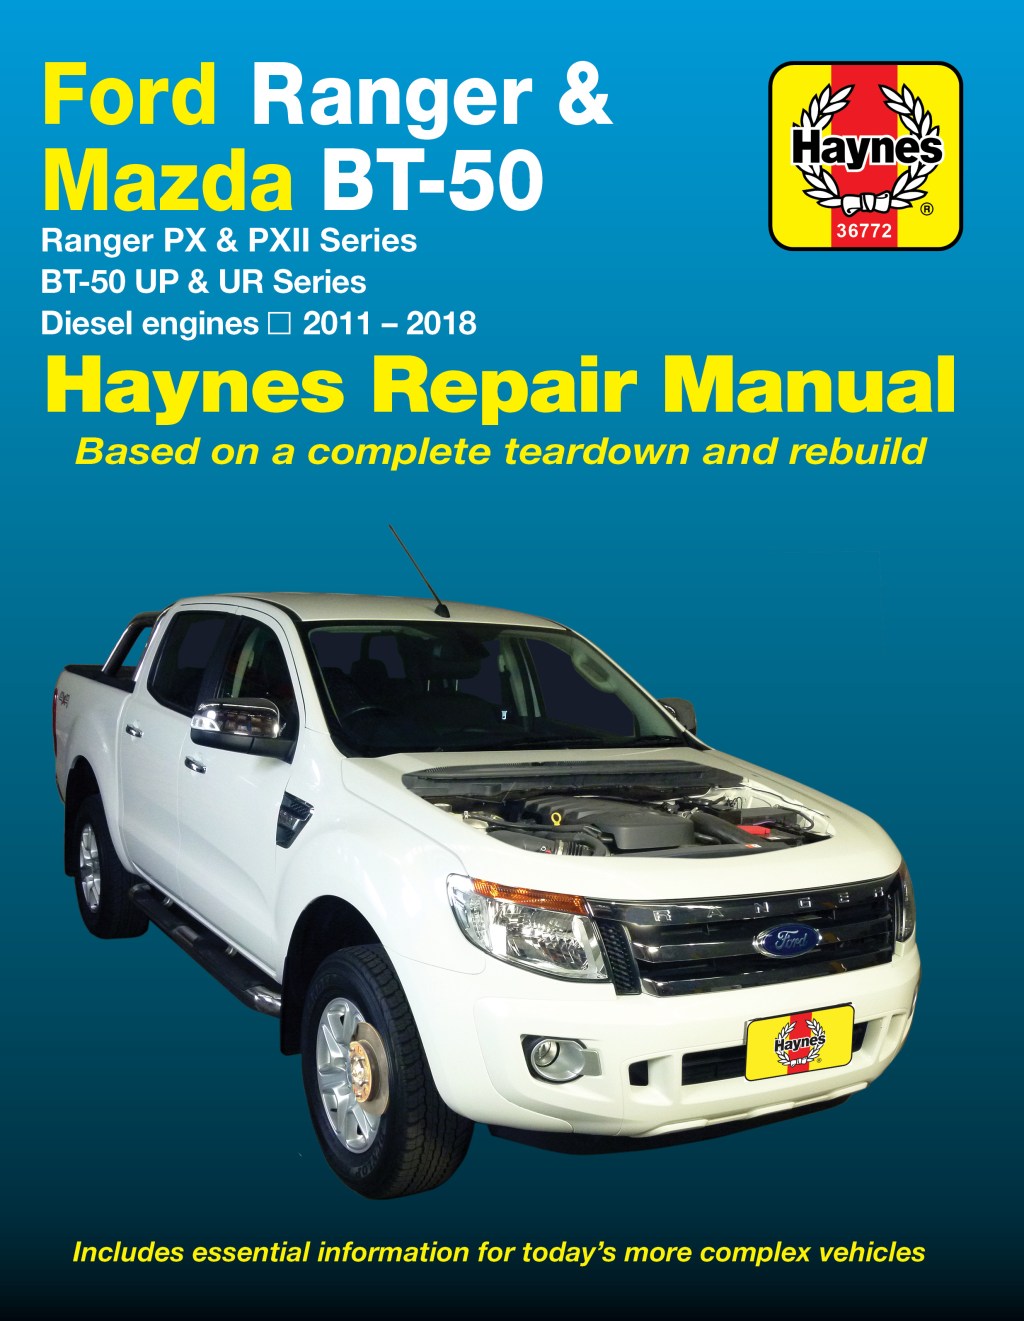 Ford Ranger  -  Haynes Repair Manuals & Guides